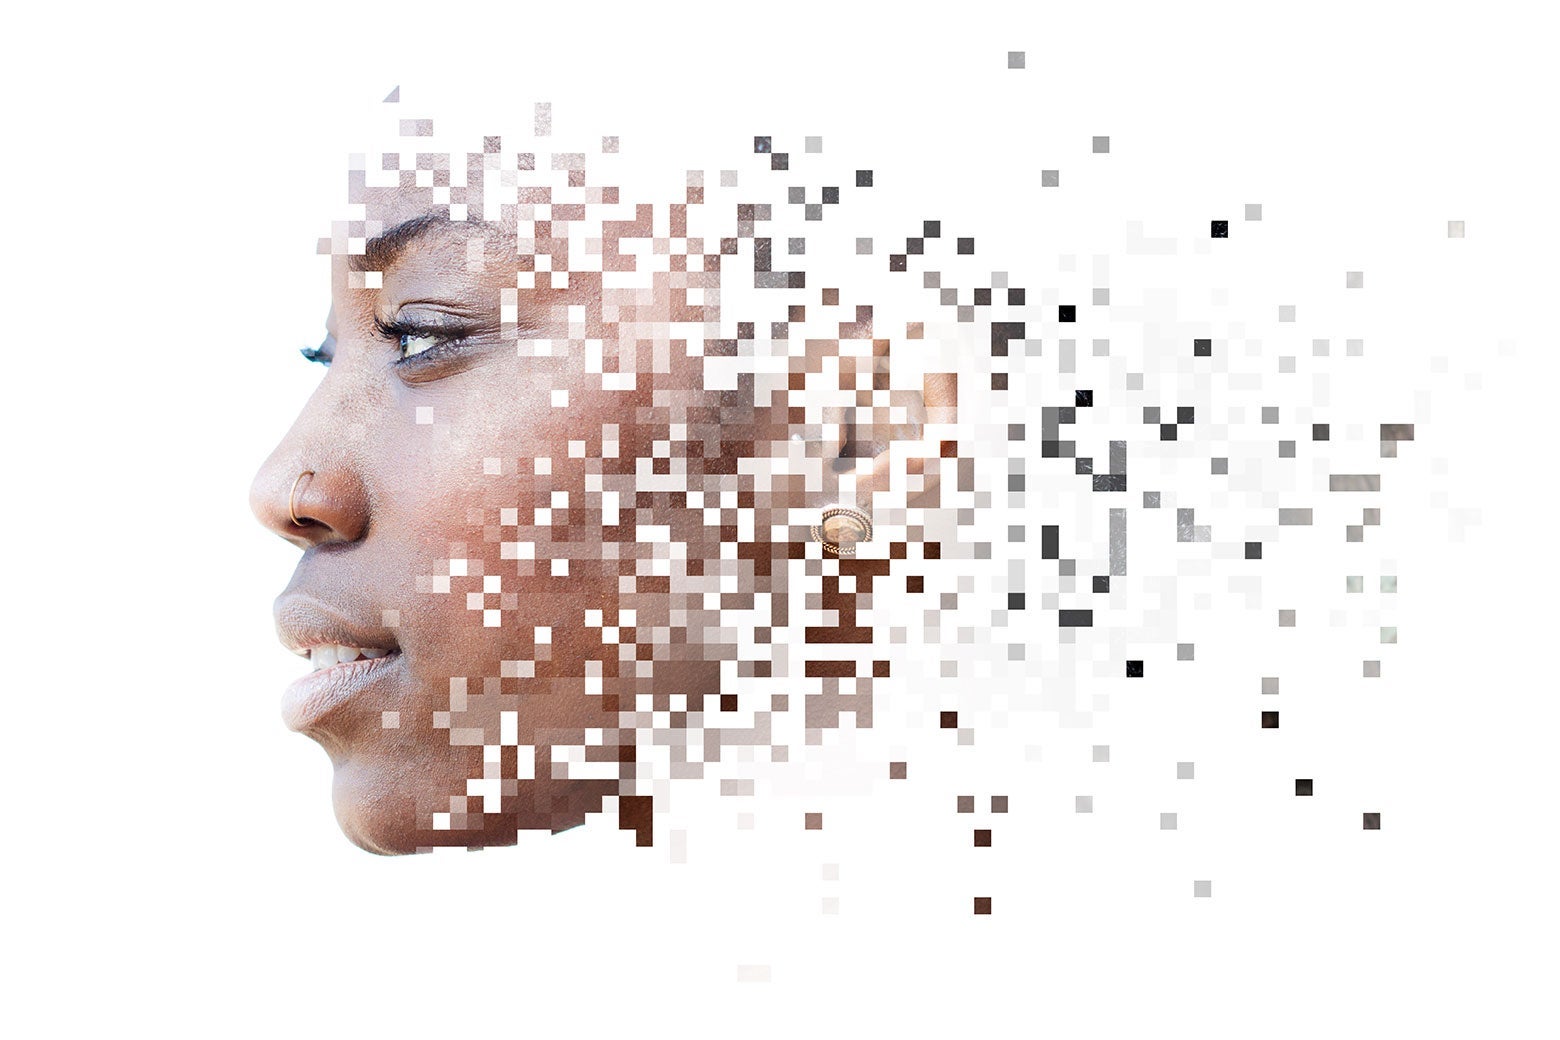 A woman's face dissolves into pixels.